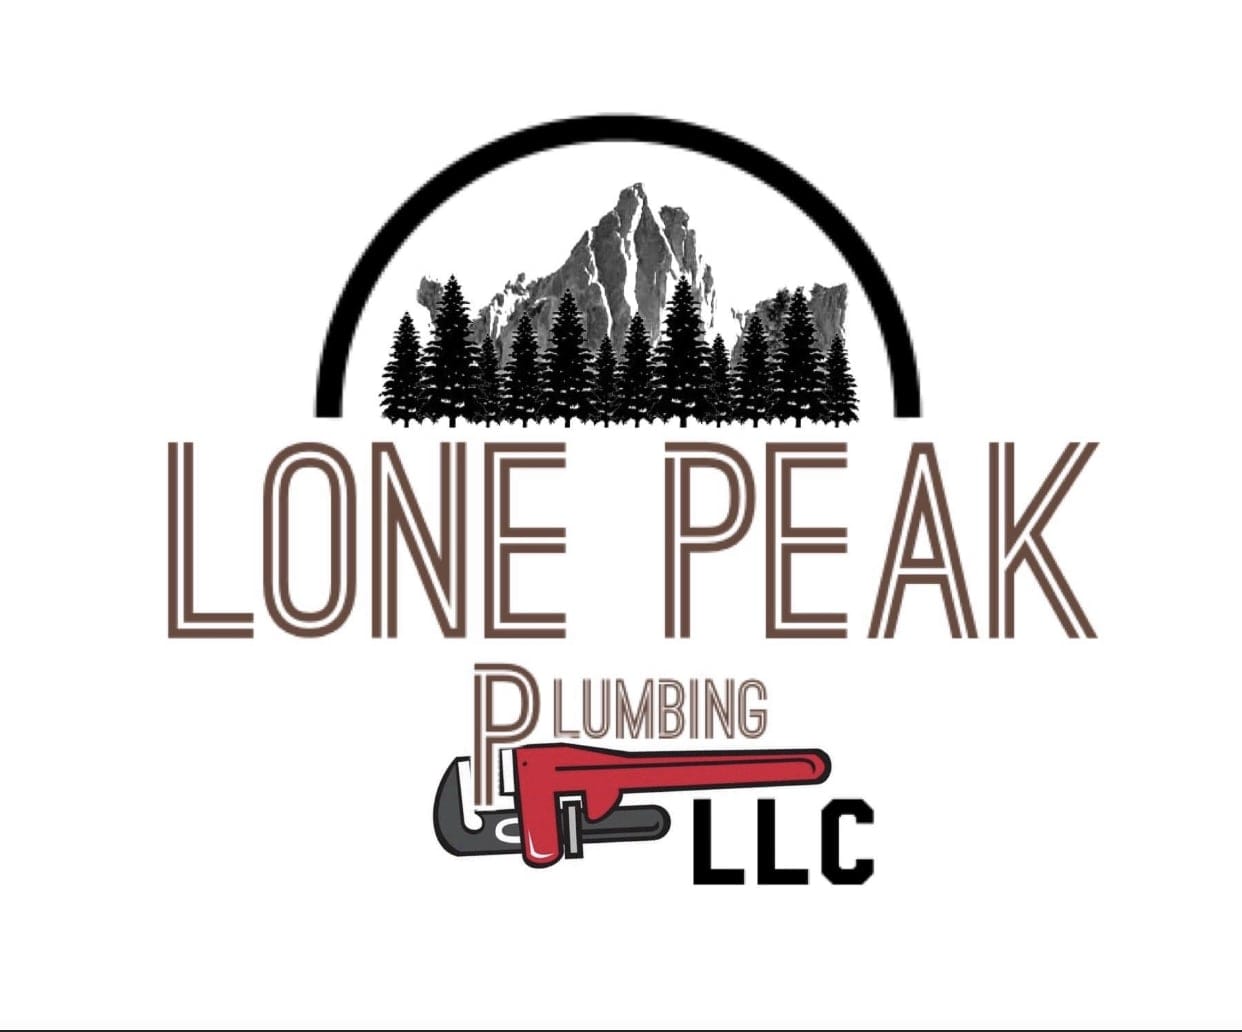 Lone Peak Plumbing